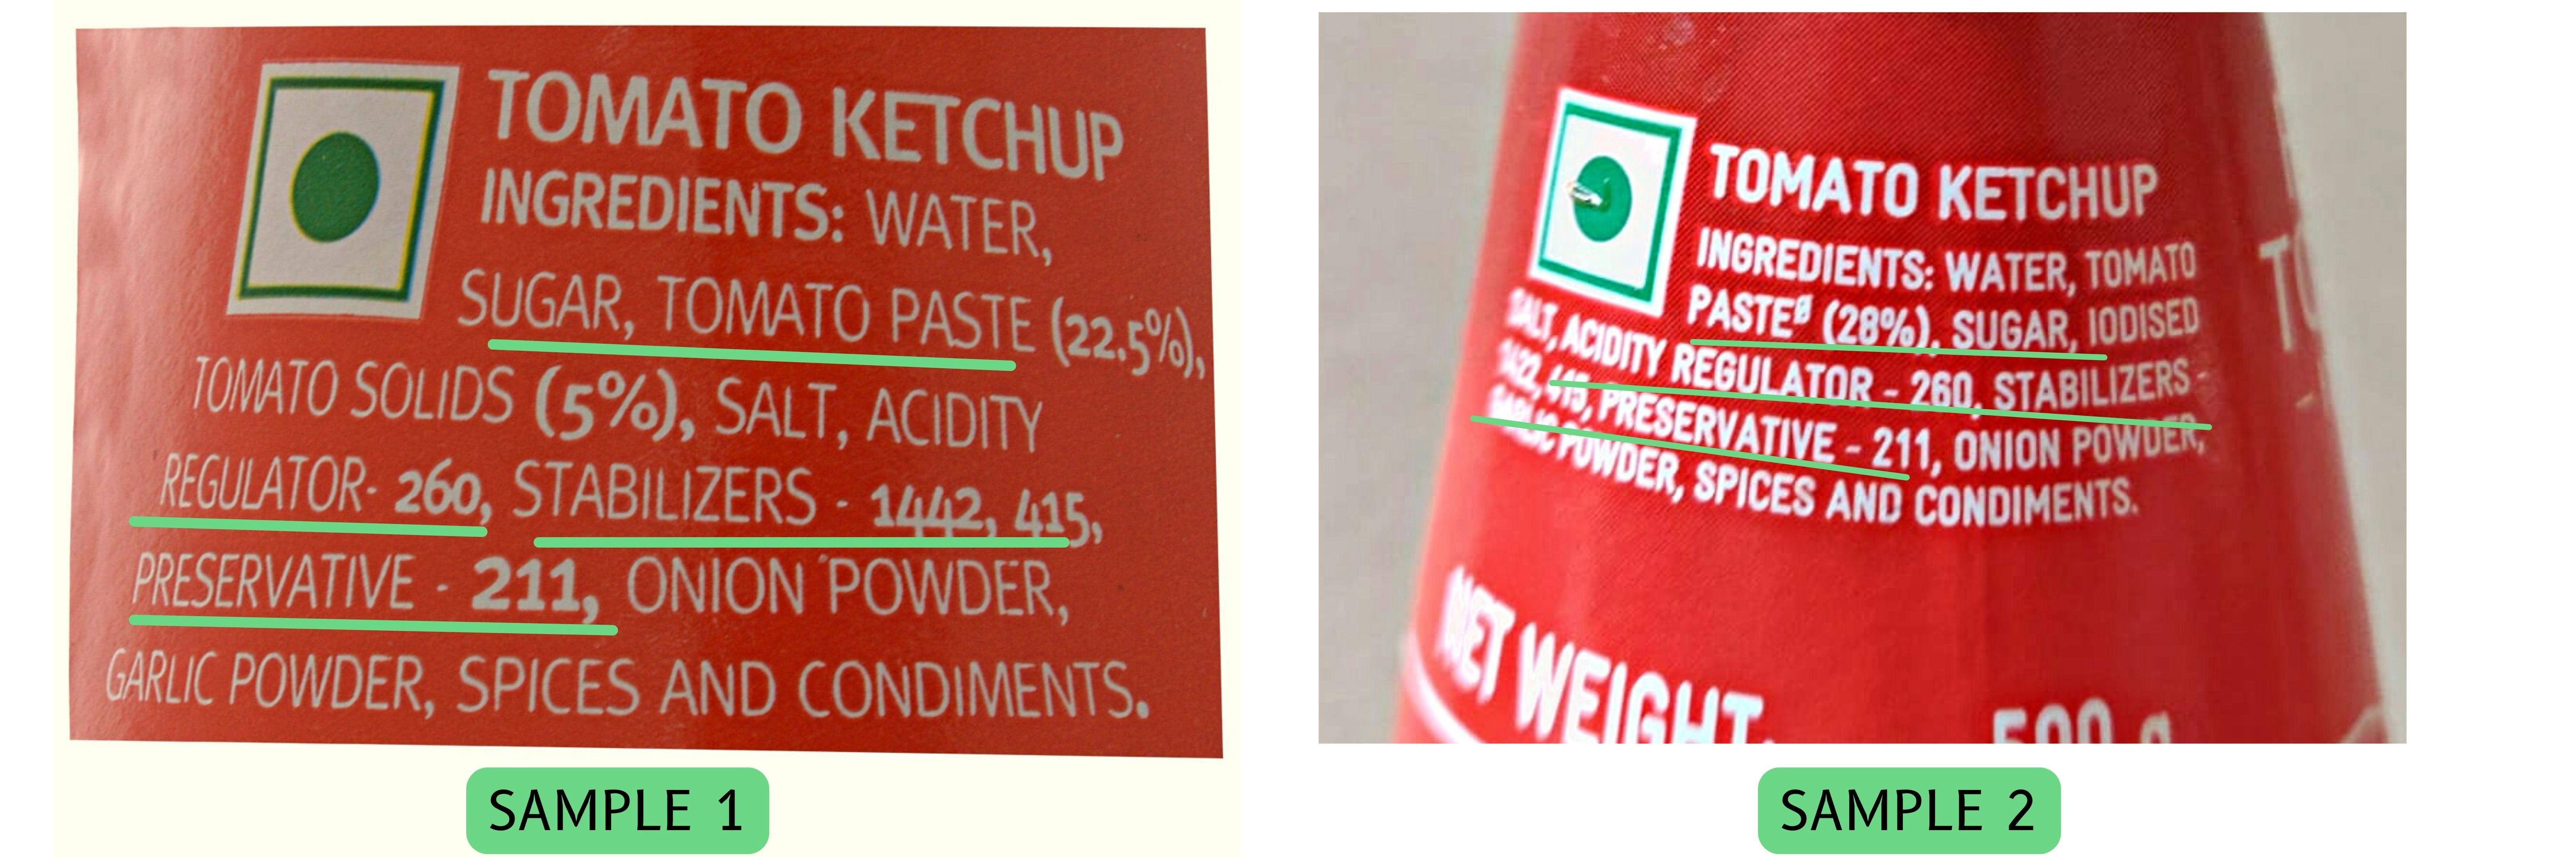 Ketchup Ingredients